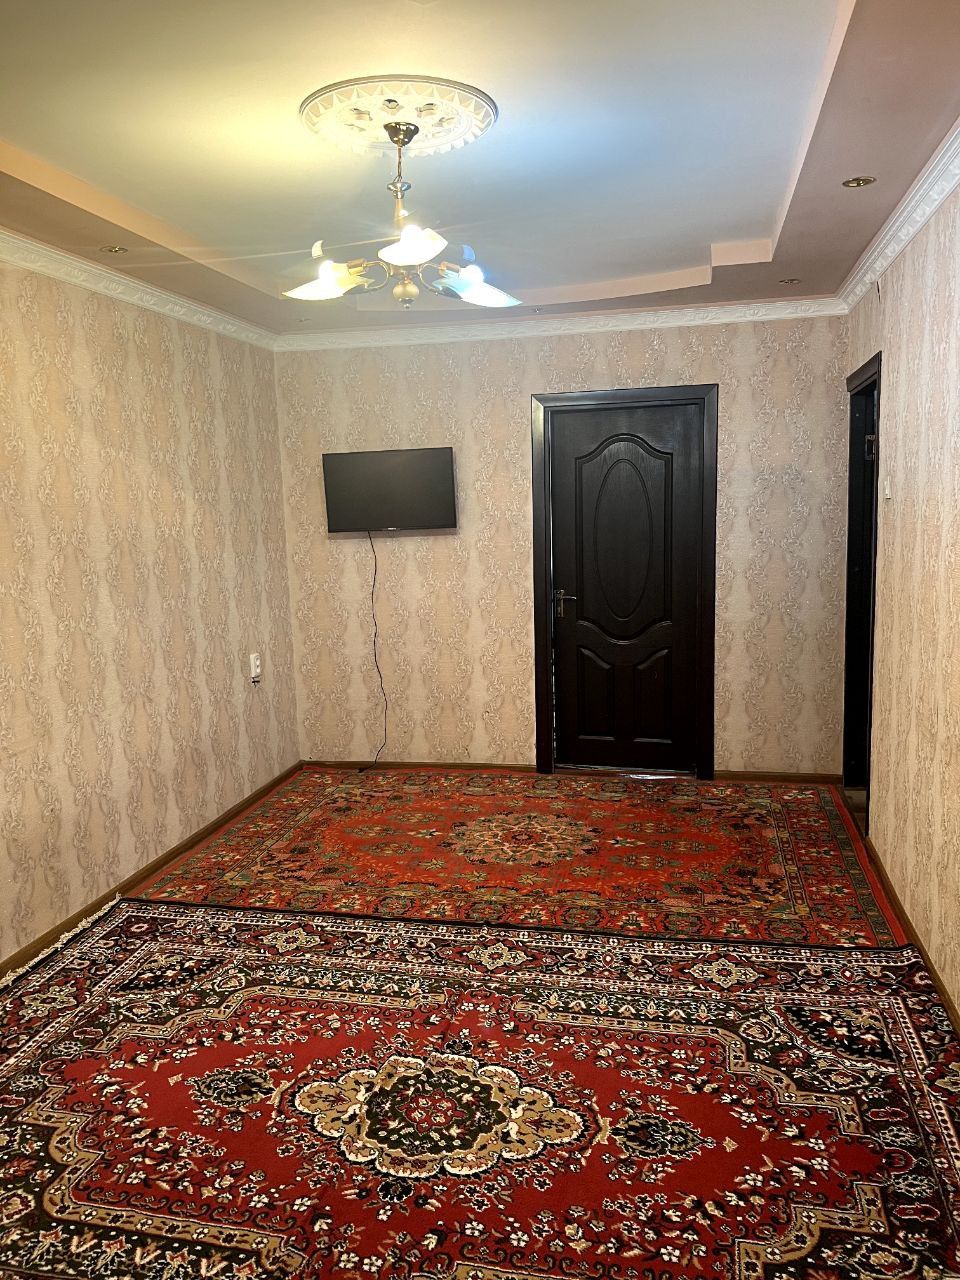 Сдается квартира на аренду чиланзарский район 26 квартал 2 комнатая